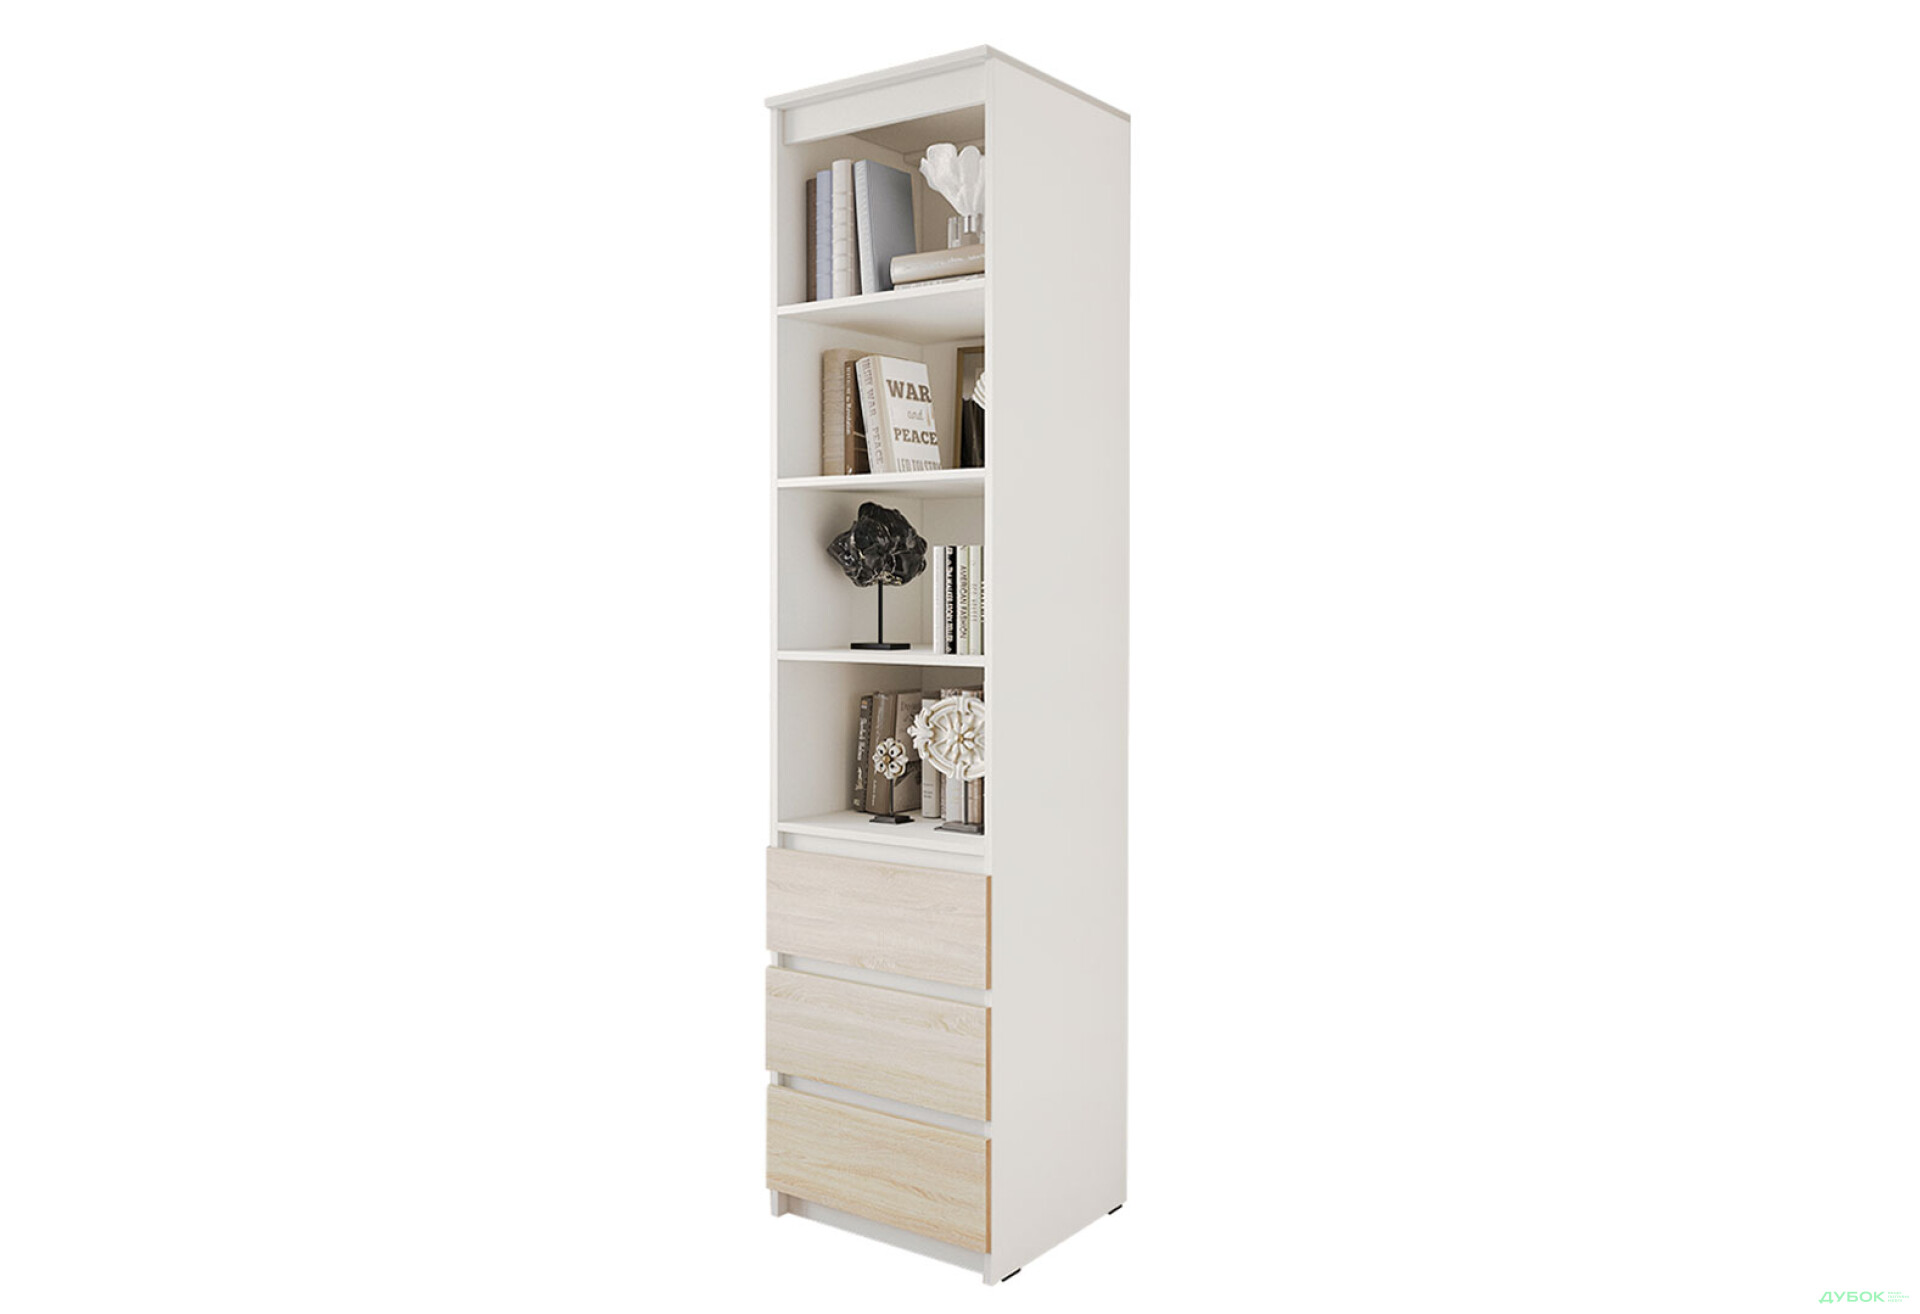 Фото 1 - Шкаф-стеллаж комбинированный Moreli T219 с ящиками 50 см, белый / дуб сонома